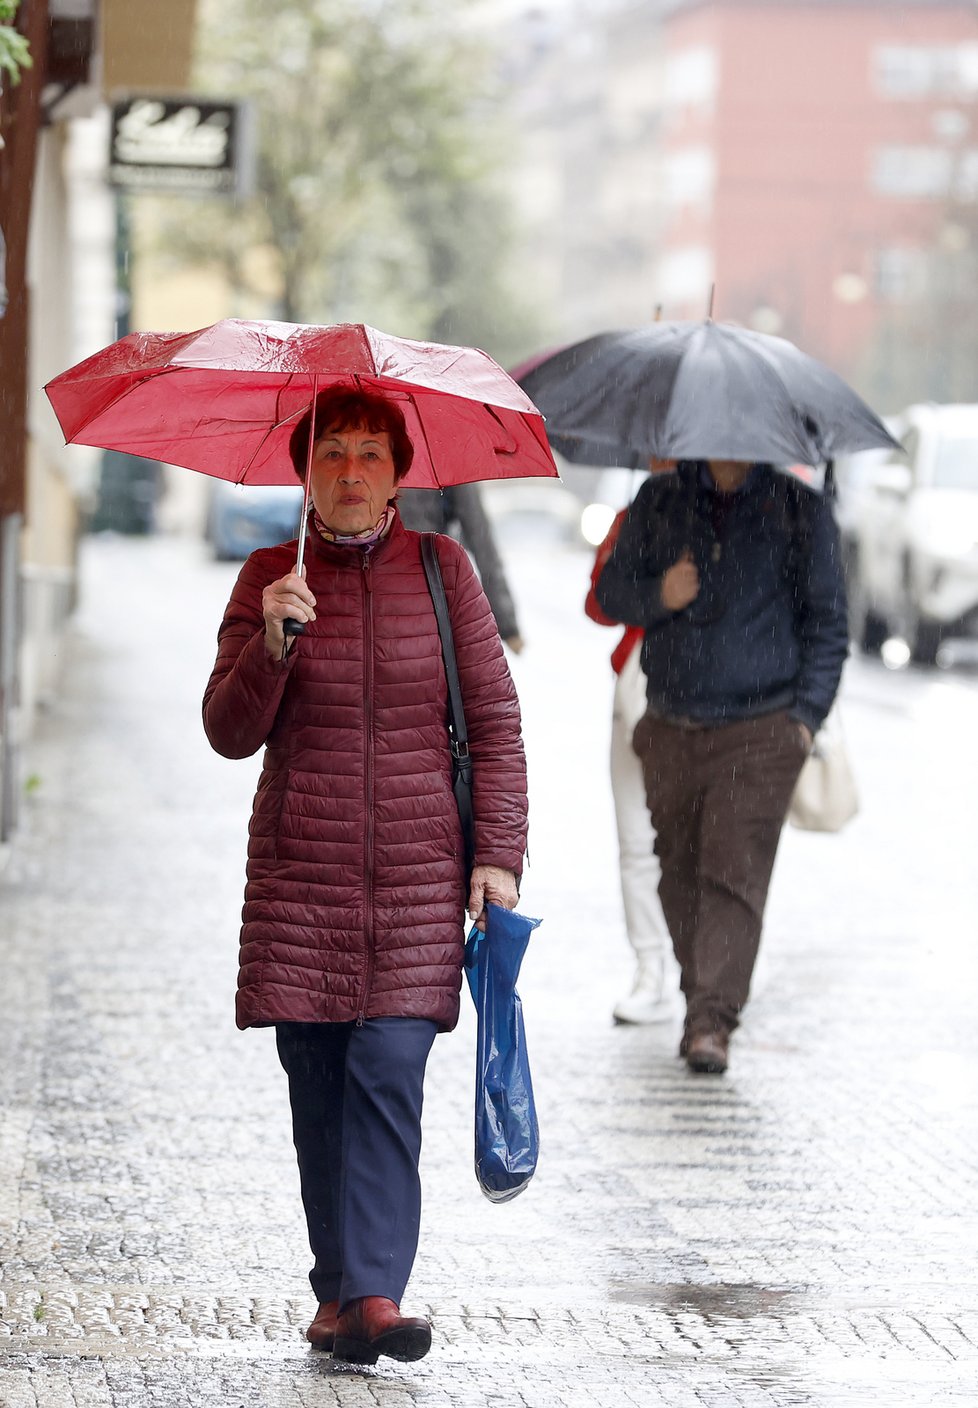 Deštivé jaro v Česku